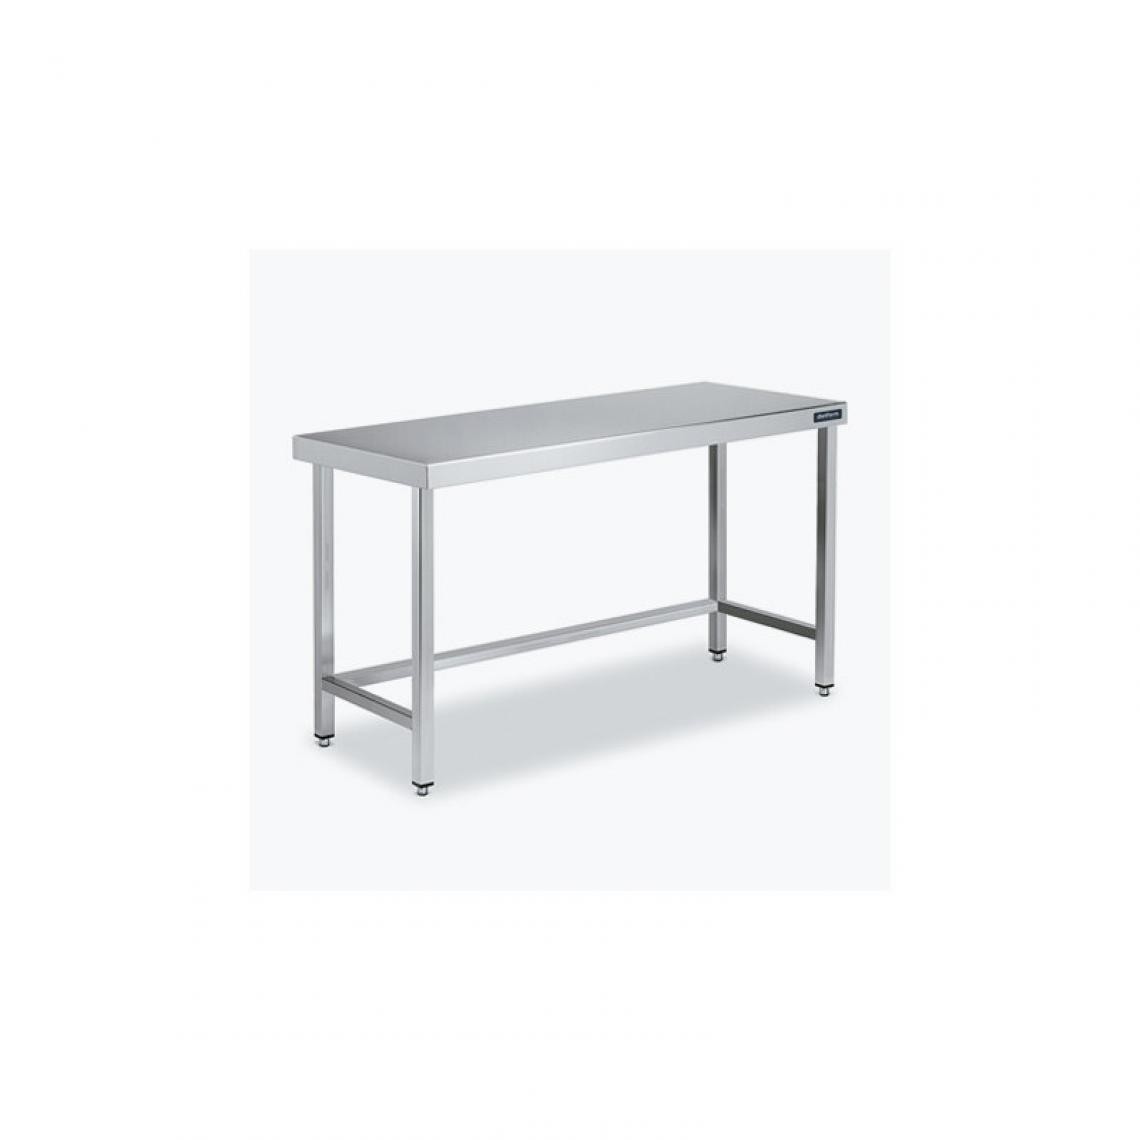 DISTFORM - Table Centrale 600x900 avec Renforts - Distform - Inox 18/101400x900x850mm - Tables à manger